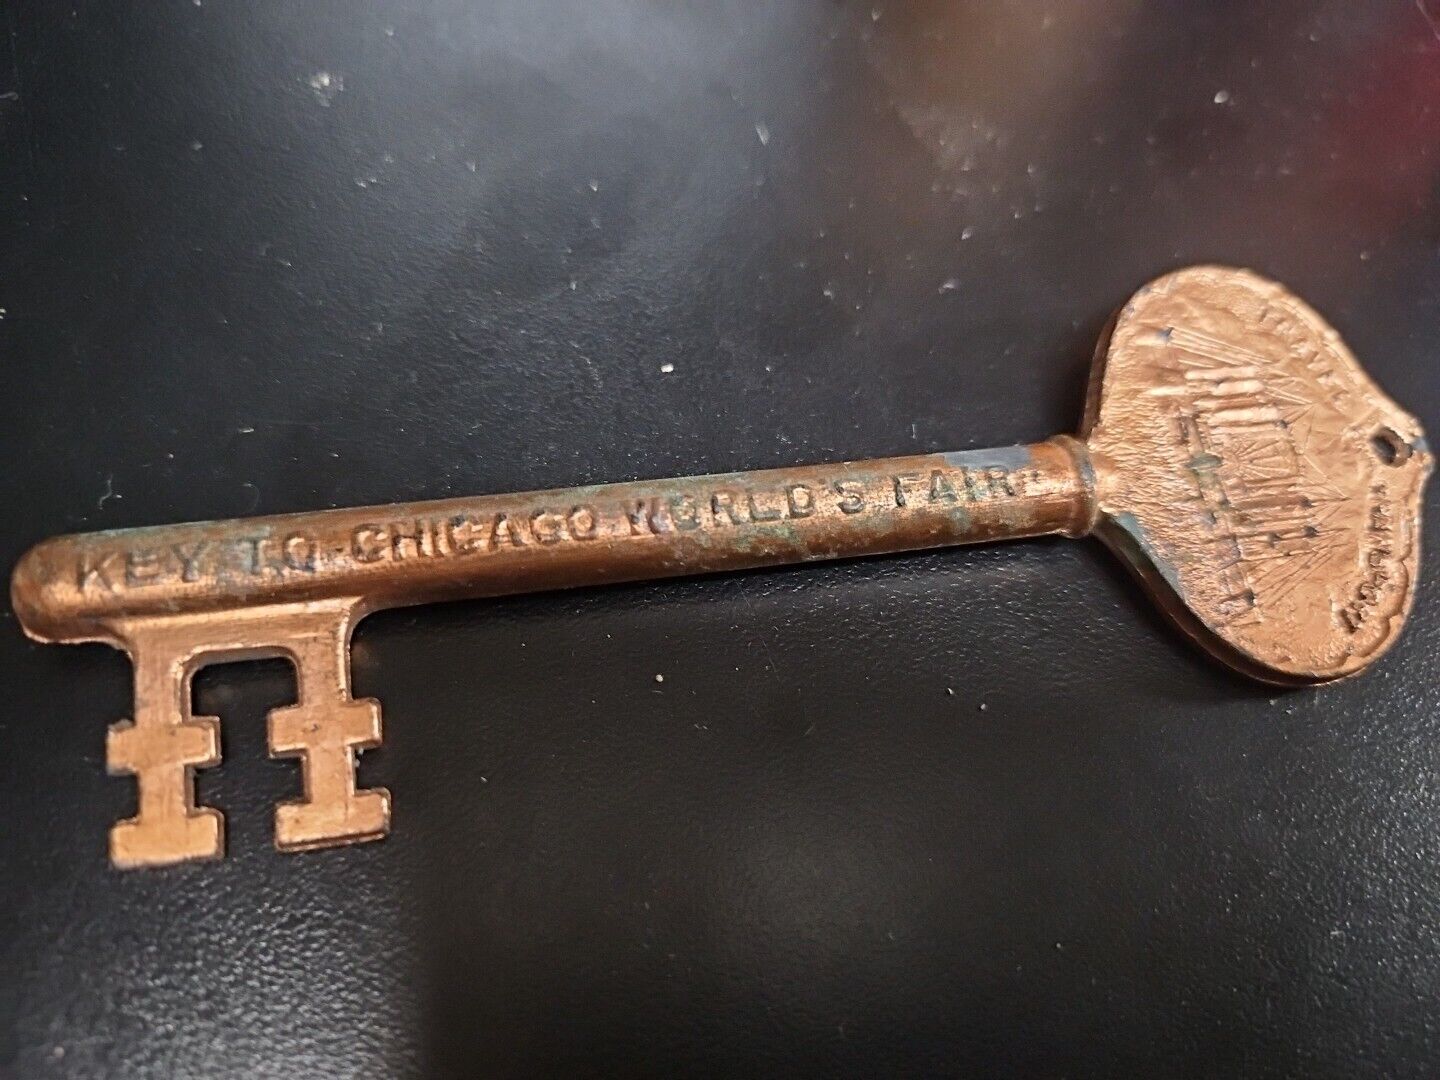 Original 1933 Souvenir Key to Chicago World’s Fair  Century Of Progress